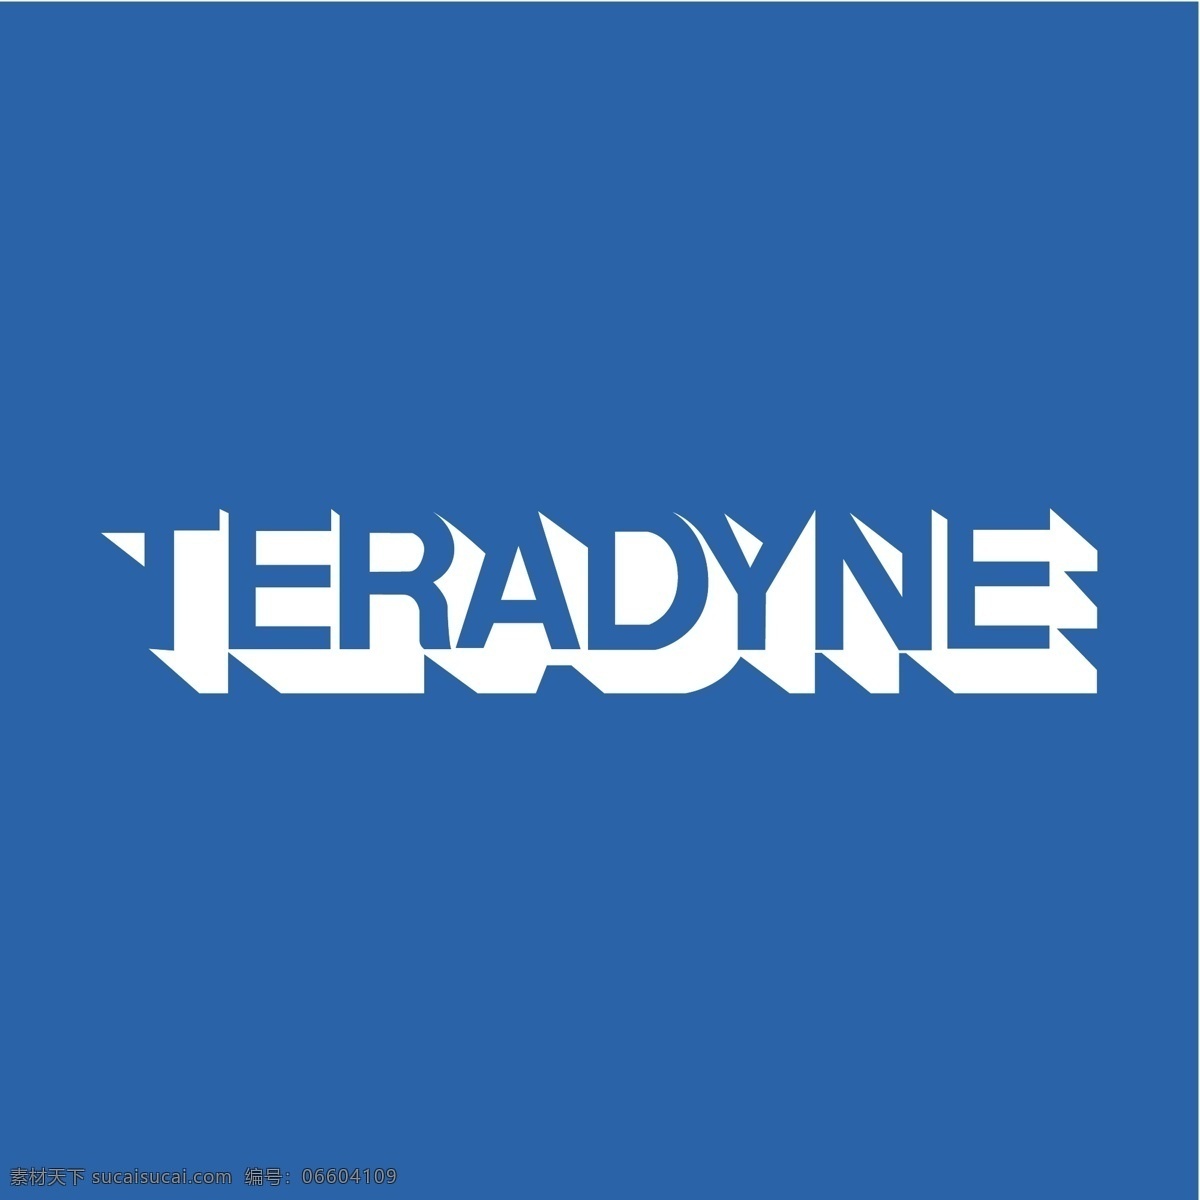 泰瑞达0 泰瑞 达 公司 teradyne 向量 向量里 蓝色